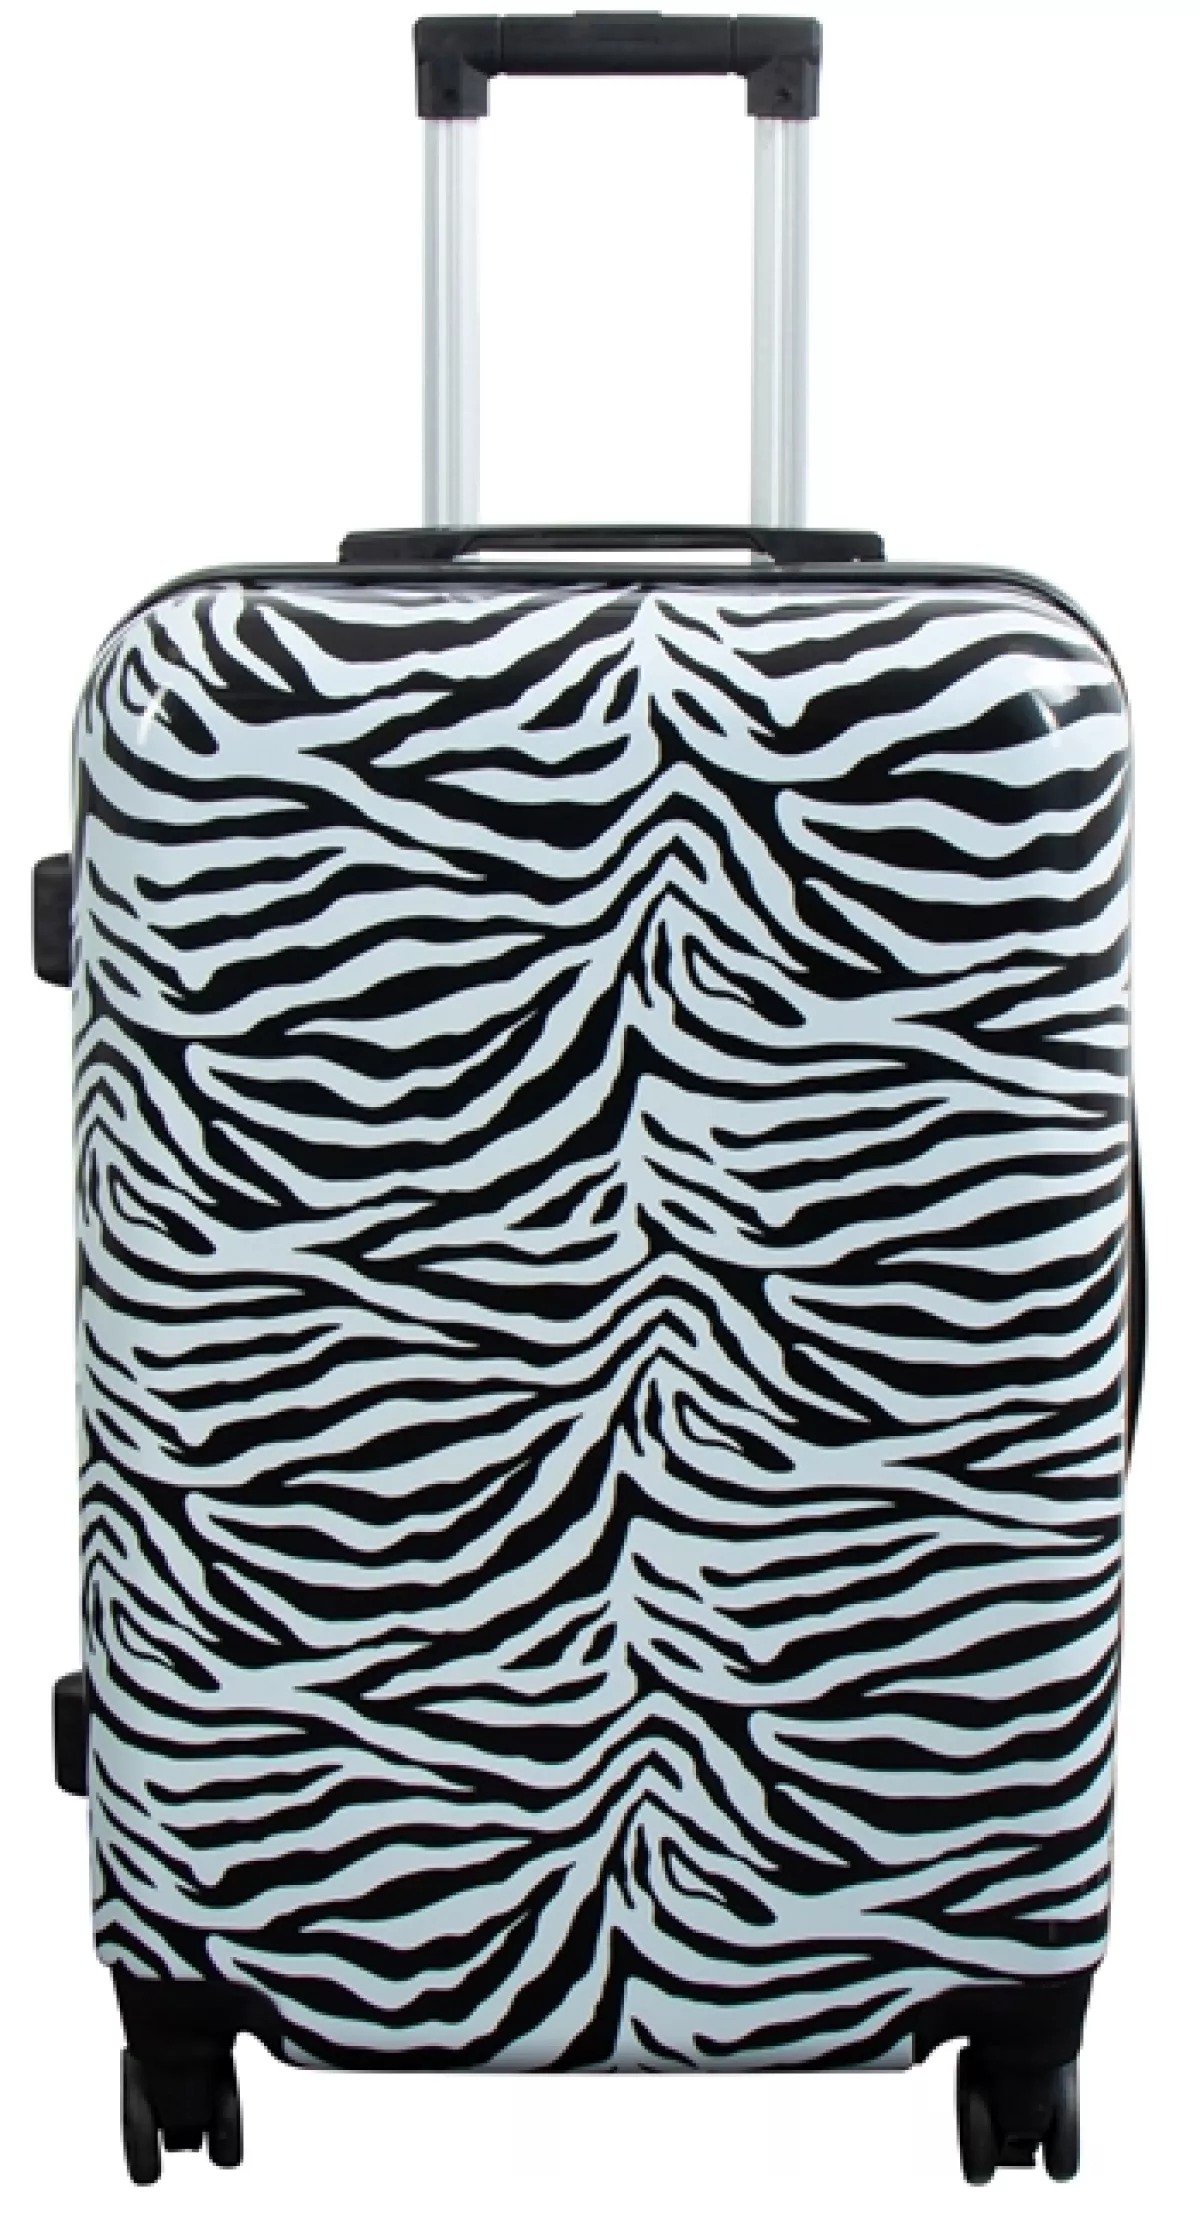 #1 - Kuffert - Hardcase kuffert - Str. Medium - Kuffert med motiv - Zebra - Eksklusiv letvægt rejsekuffert